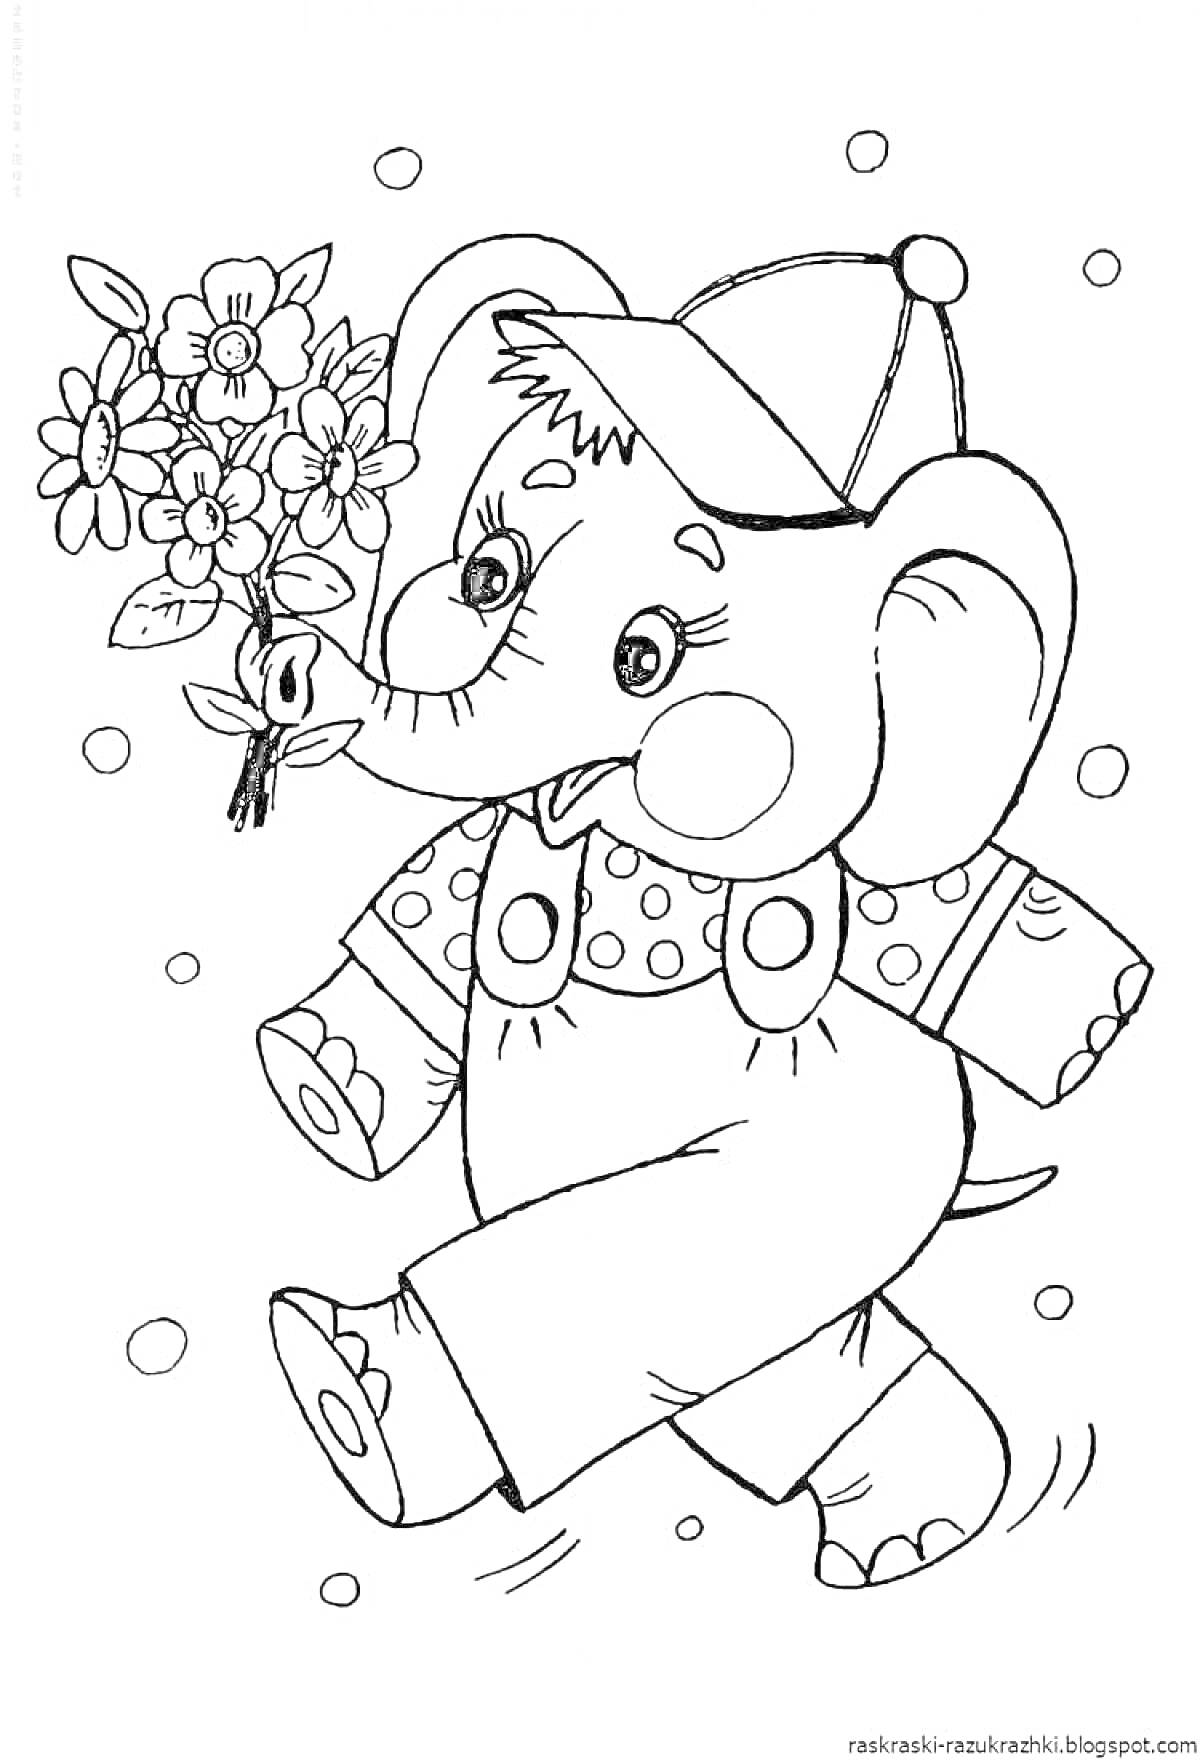 Раскраска Слонёнок с цветами в шляпе и комбинезоне